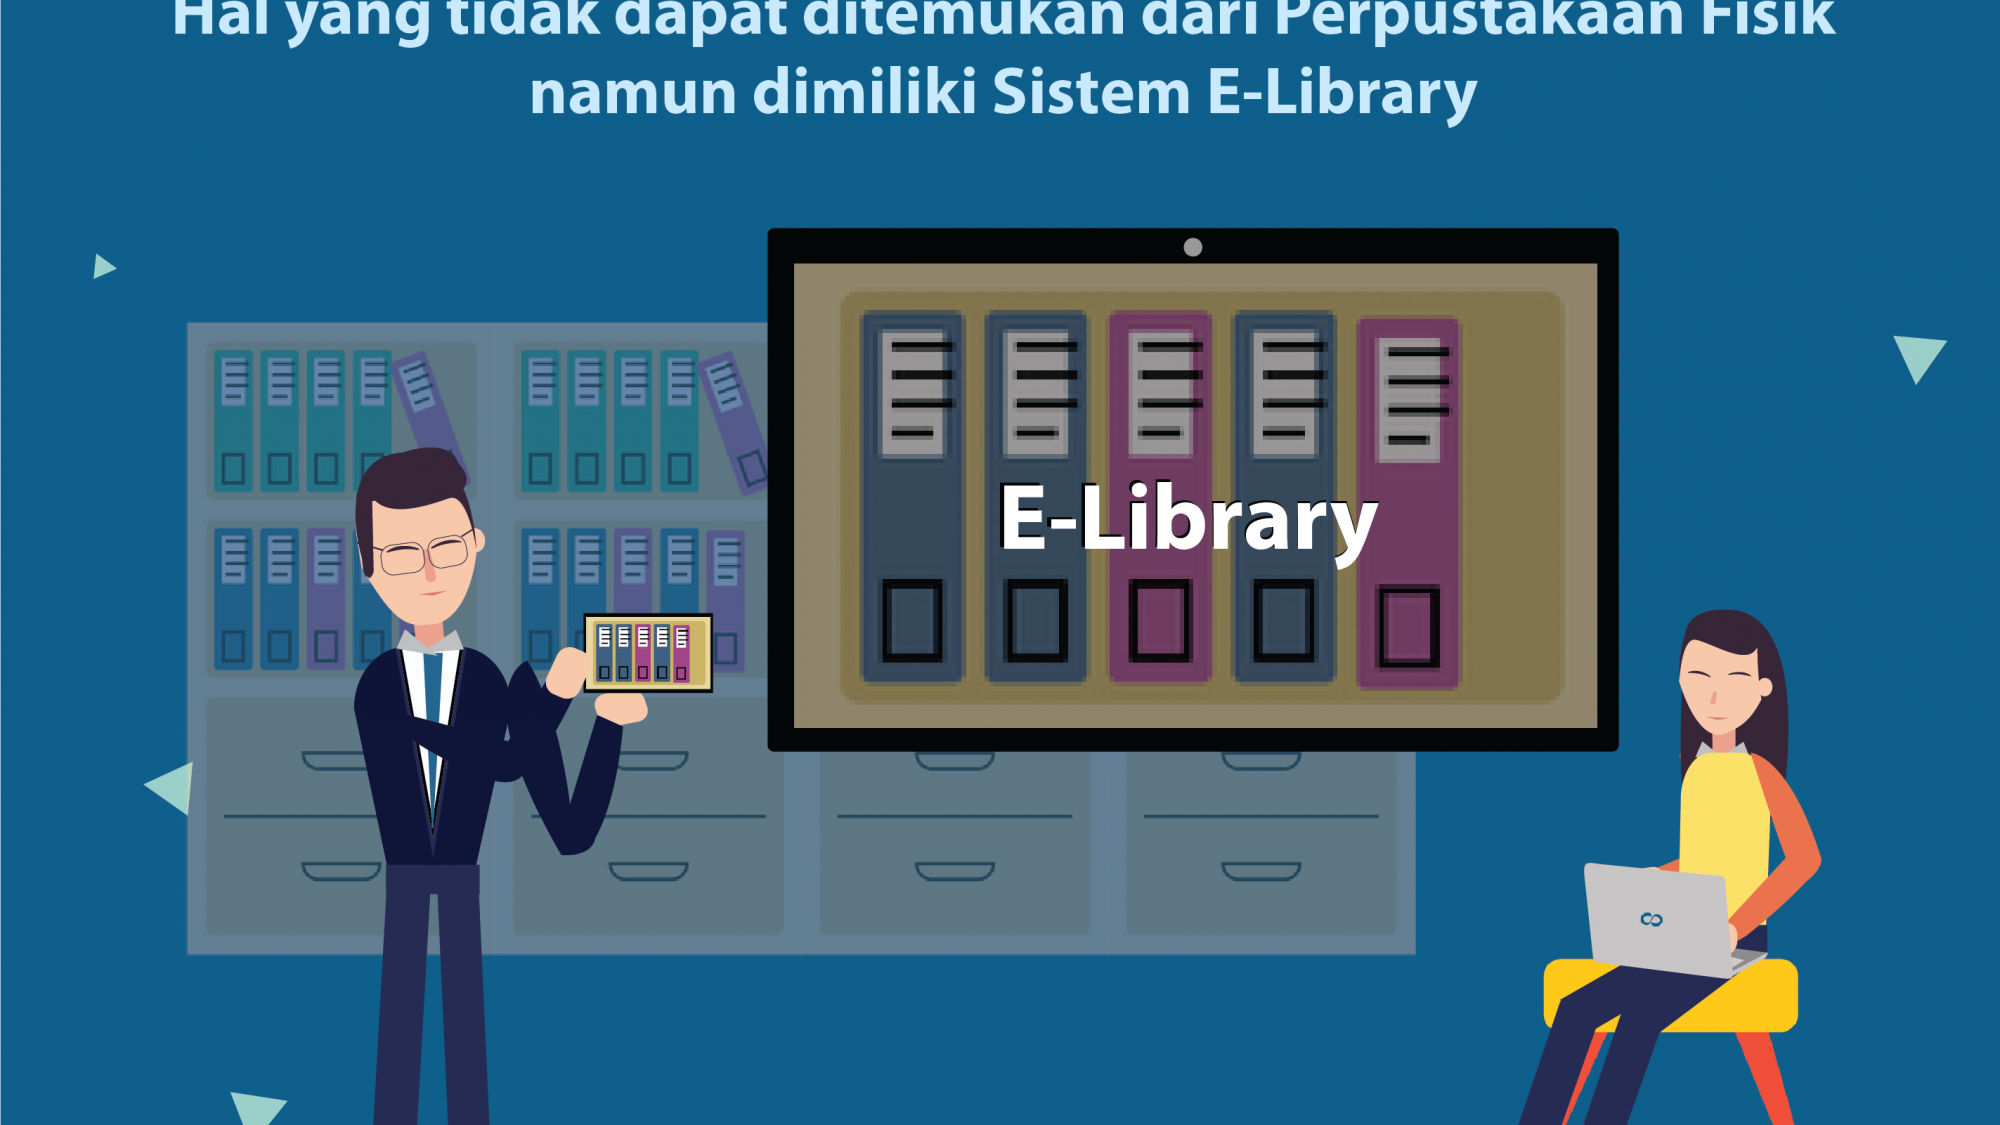 Hal yang Tidak Ditemukan dari Perpustakaan Offline namun Dimiliki Sistem E-Learning